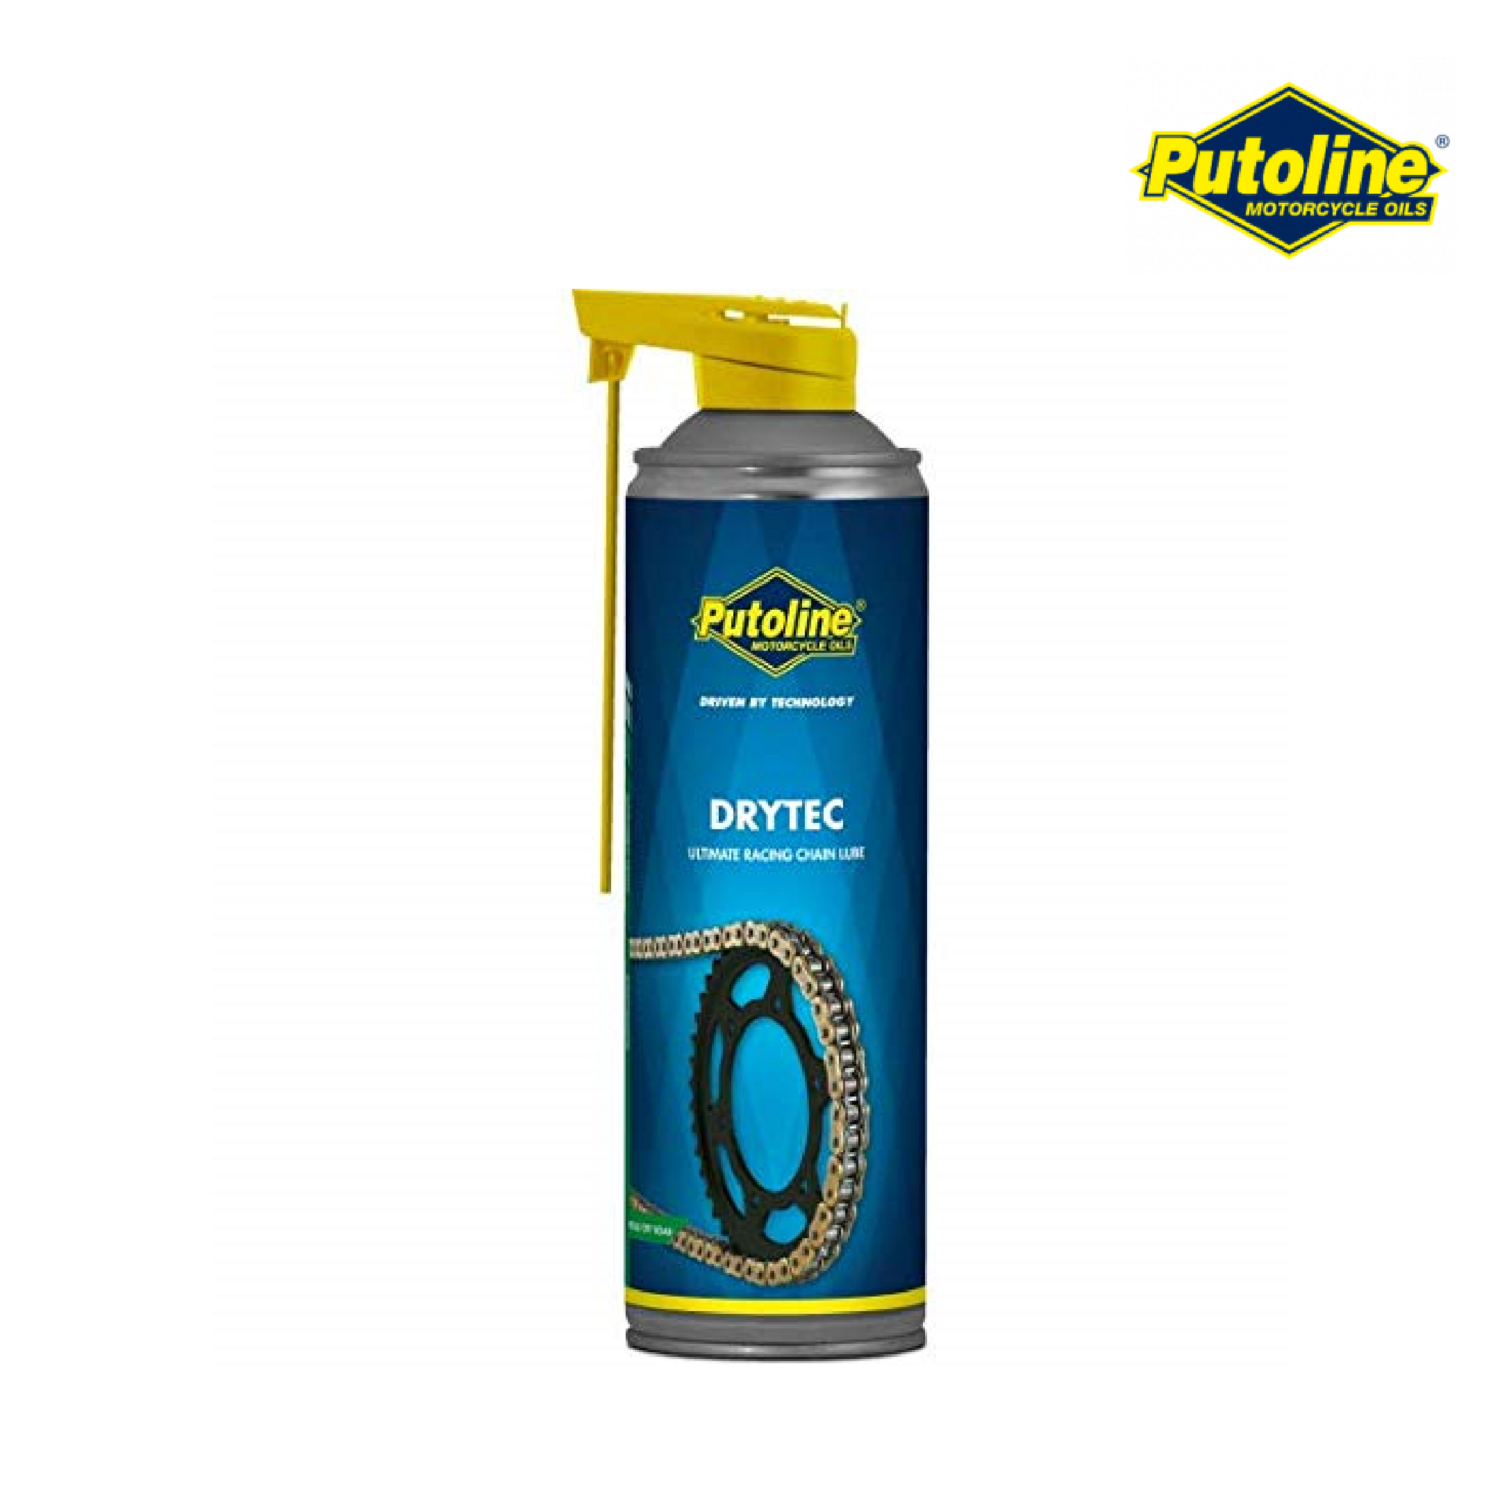 Putoline Drytec Chain Lube (500ML)